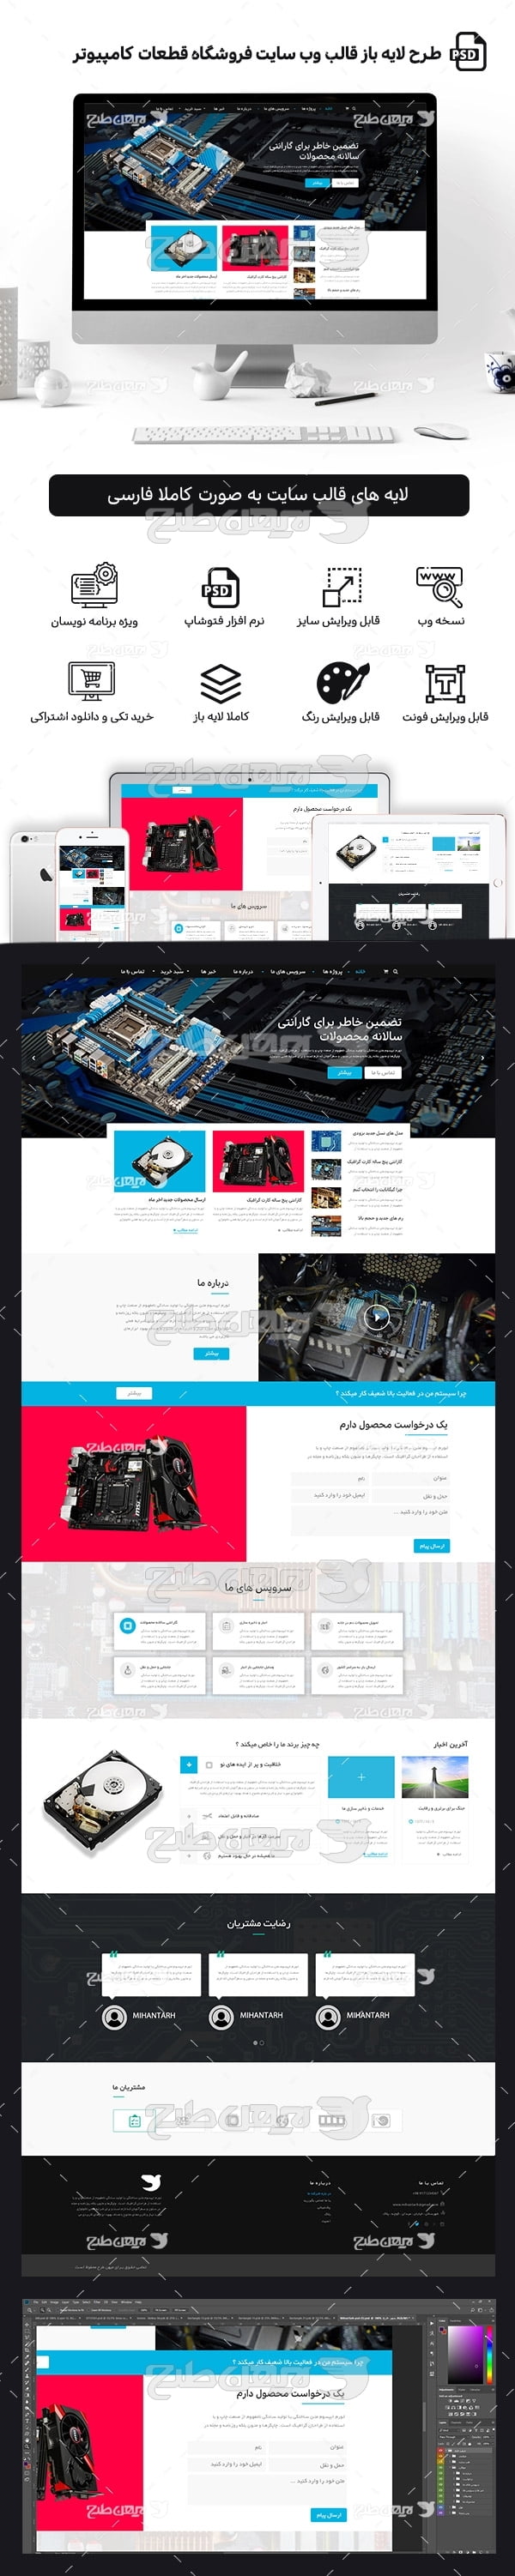 طرح لایه باز صفحه اصلی قالب سایت فروشگاه قطعات کامپیوتر